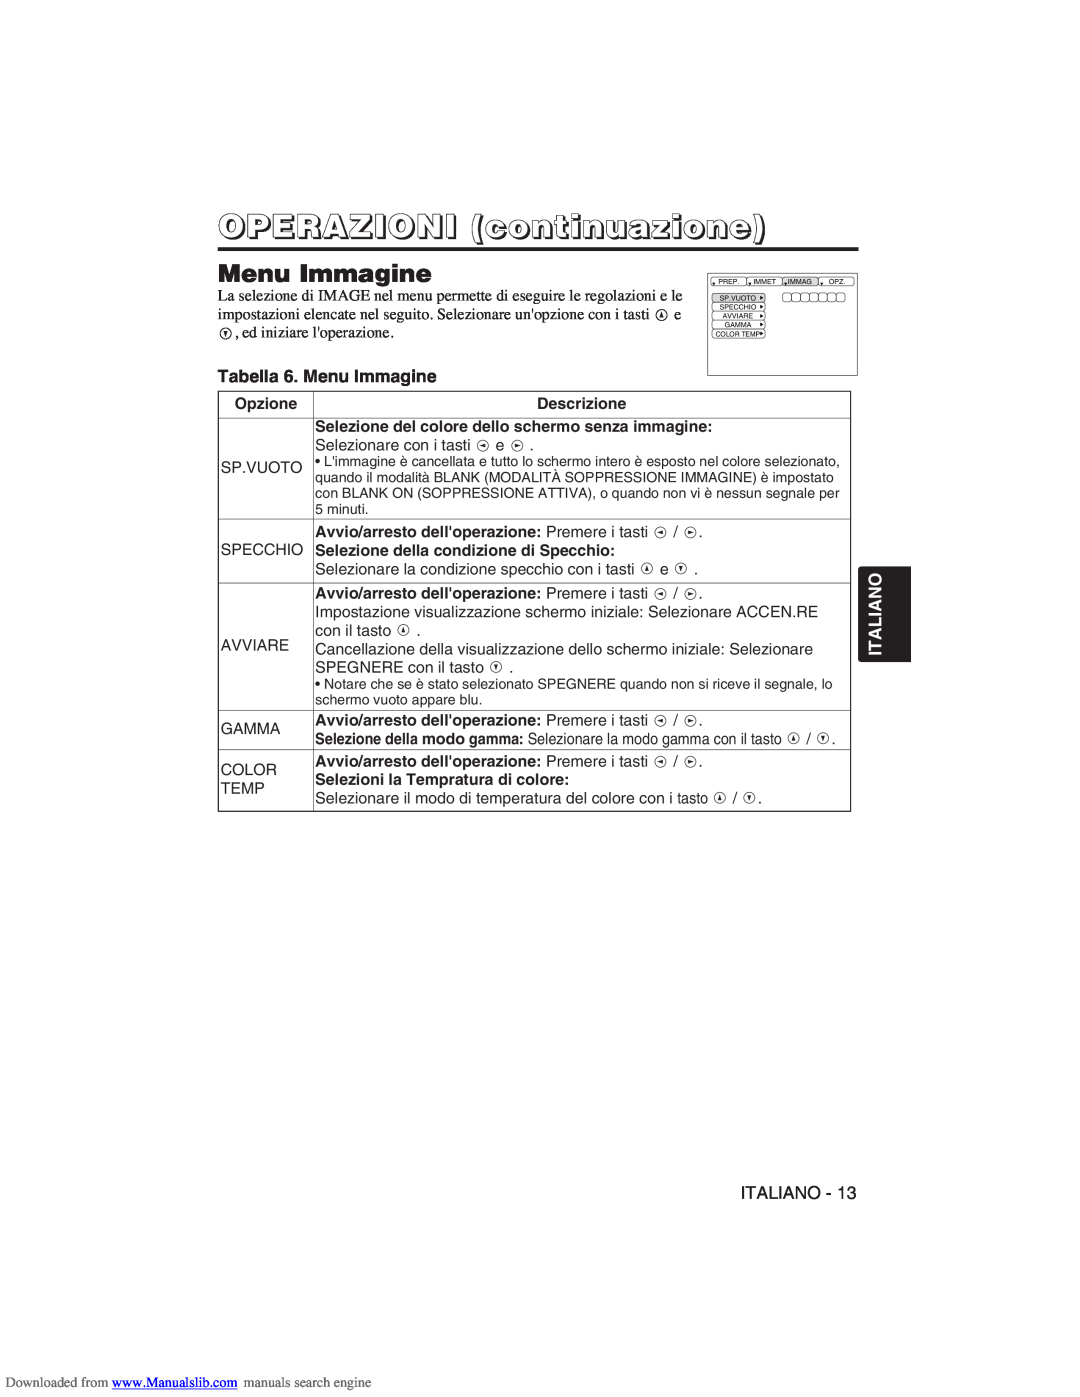 Hitachi CP-X275W user manual Tabella 6. Menu Immagine, OPERAZIONI continuazione, Italiano 